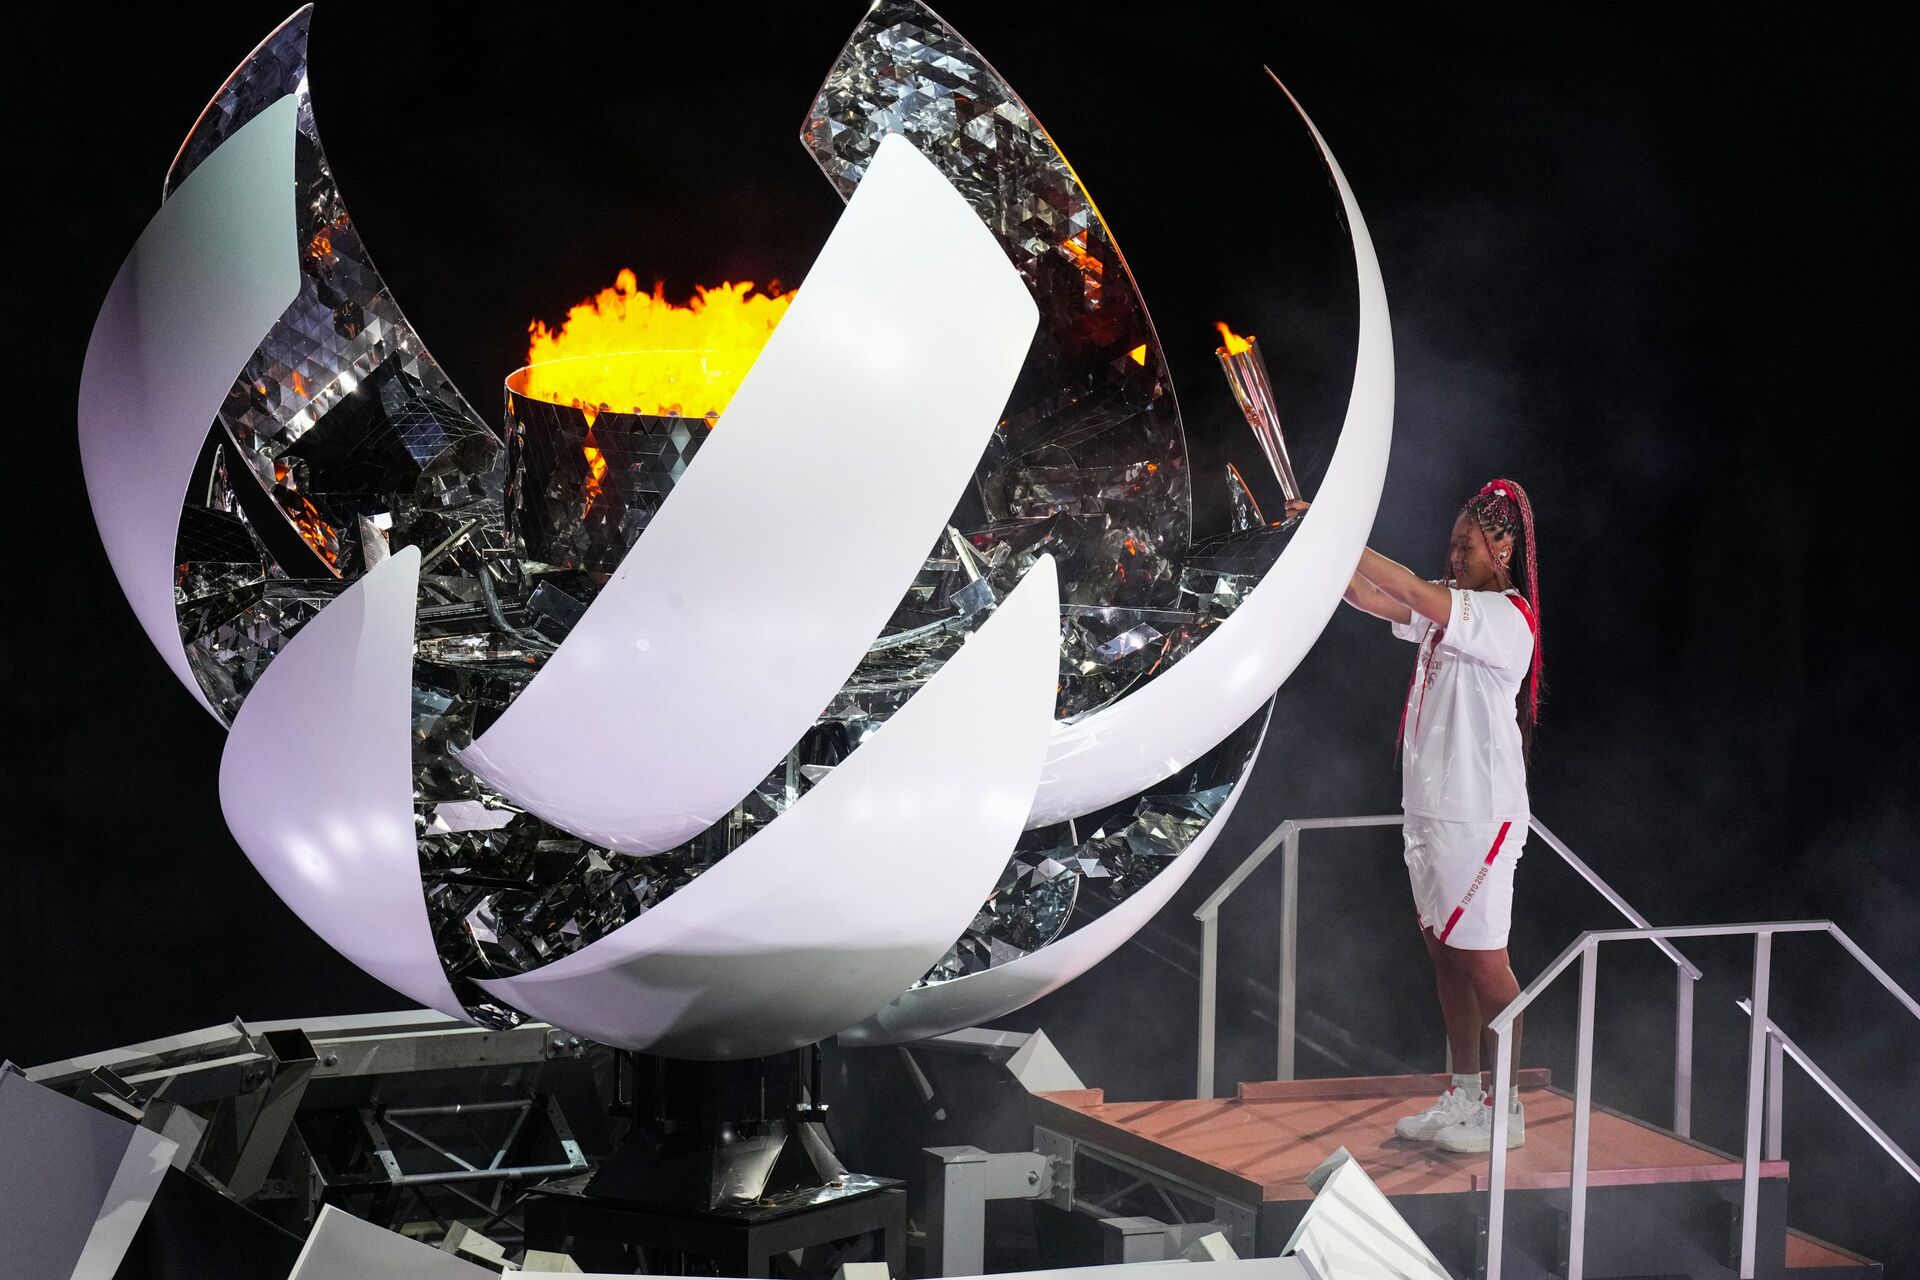 Теннисистка Наоми Осака зажигает олимпийский огонь на церемонии открытия XXXII летних Олимпийских игр в Токио - Sputnik Грузия, 1920, 24.08.2021